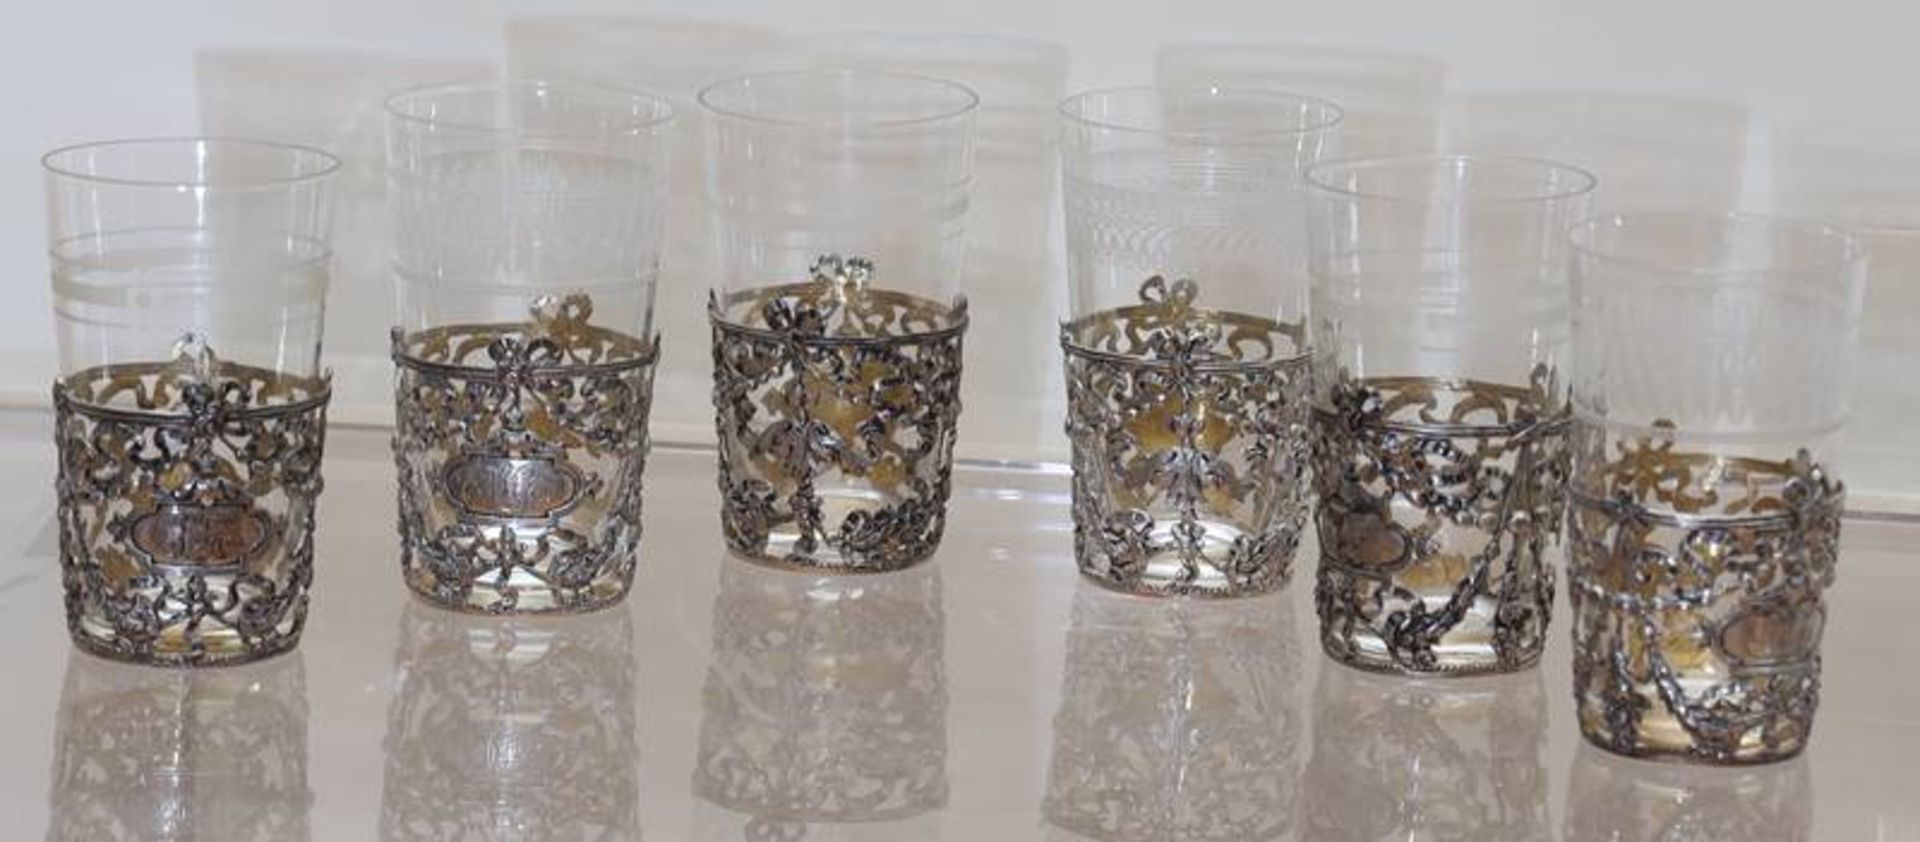 Sechs Gläser mit Silbermontur